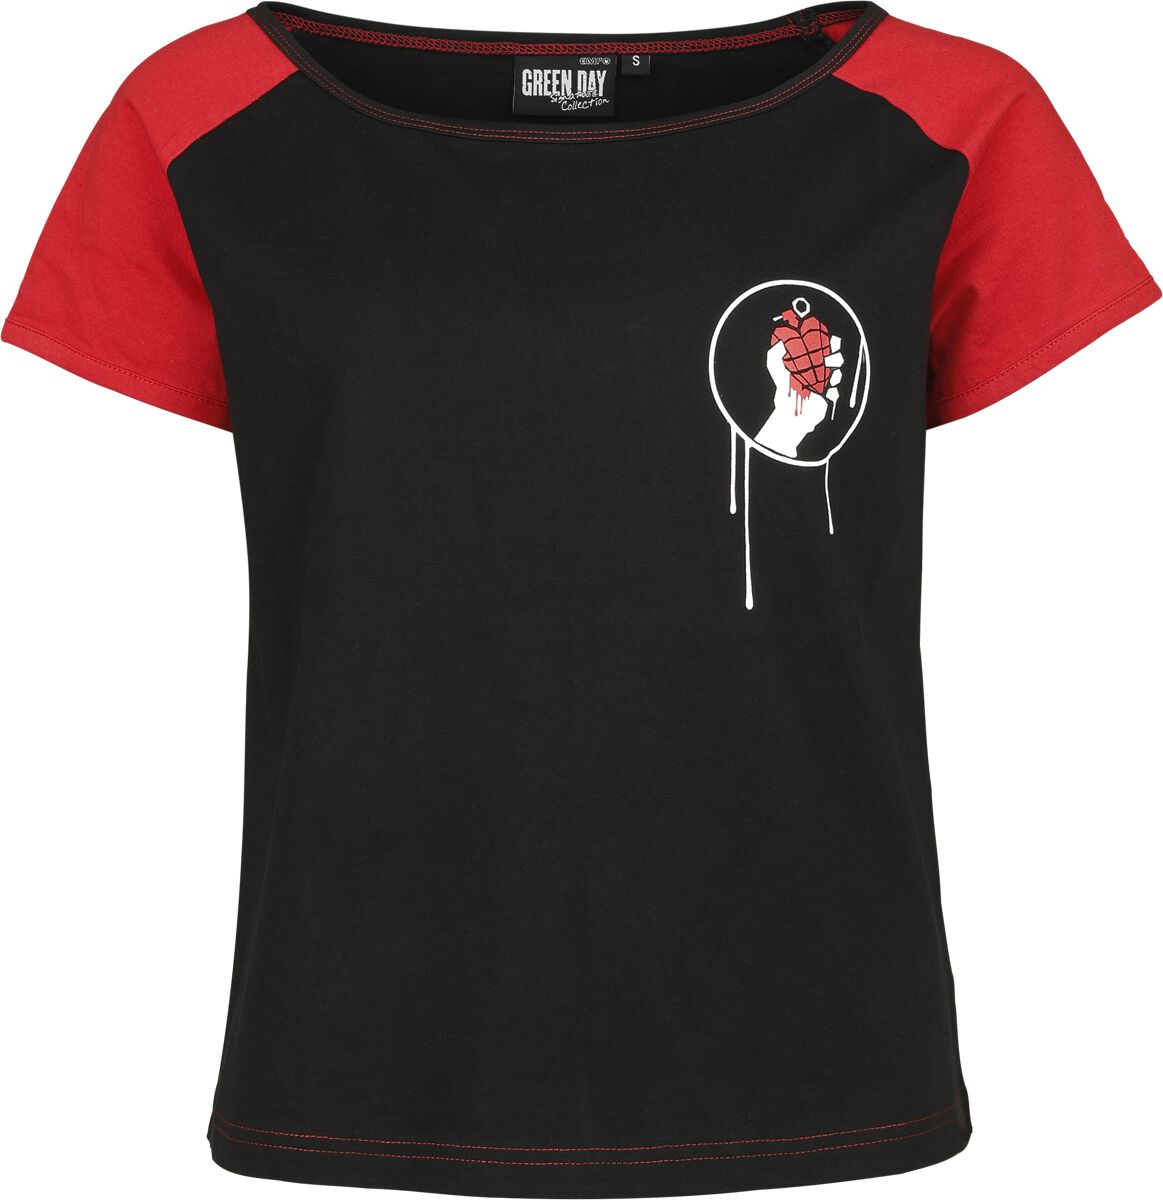 Green Day T-Shirt - EMP Signature Collection - XS bis XXL - für Damen - Größe L - schwarz/rot  - EMP exklusives Merchandise!